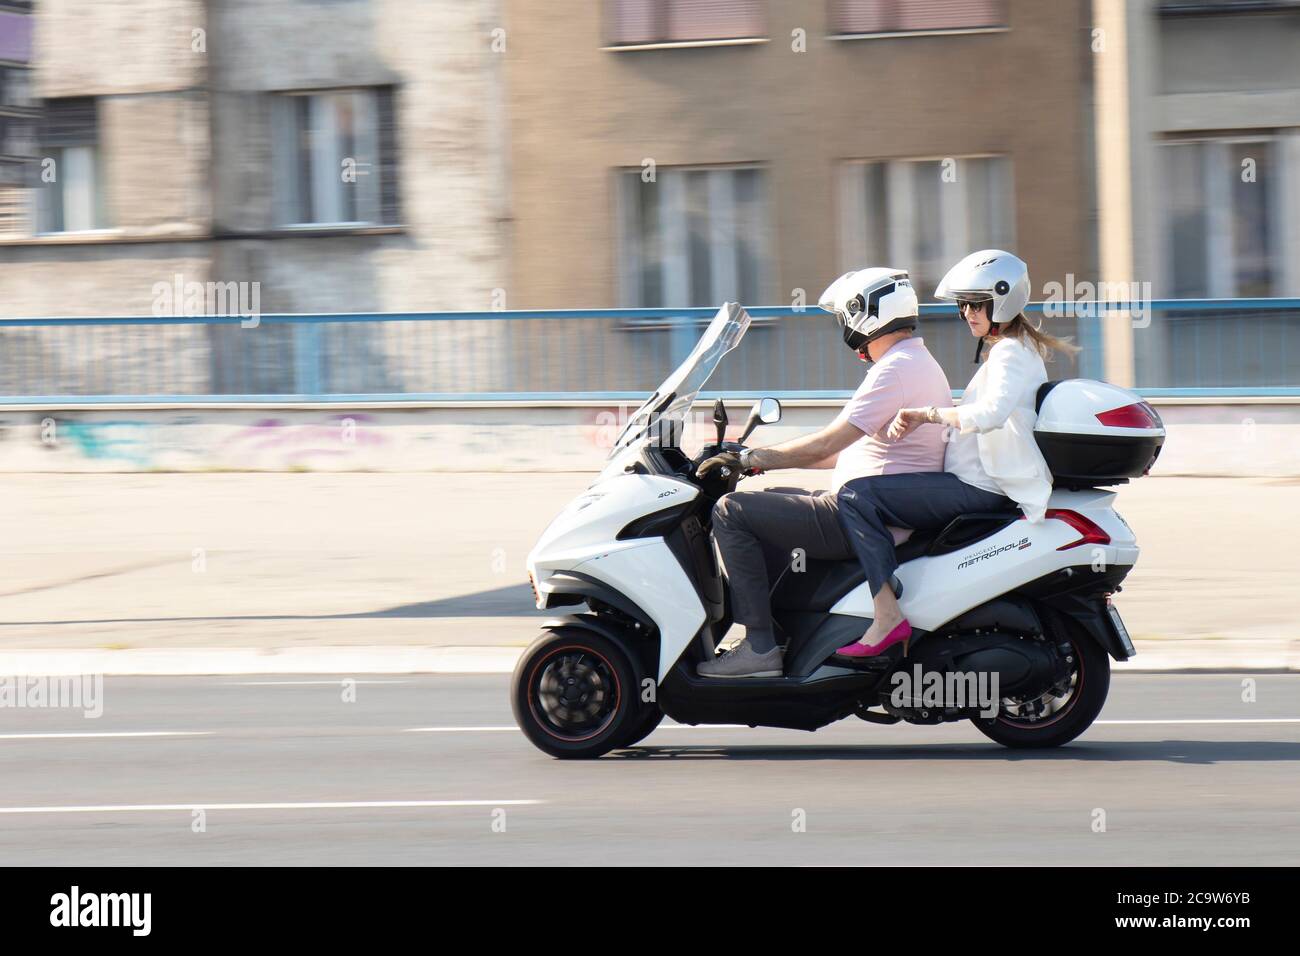 Belgrade, Serbie - 31 juillet 2020 : couple d'âge mûr à bord d'une moto à trois roues dans la rue de la ville, et une femme vérifie l'heure à sa montre de poignet Banque D'Images